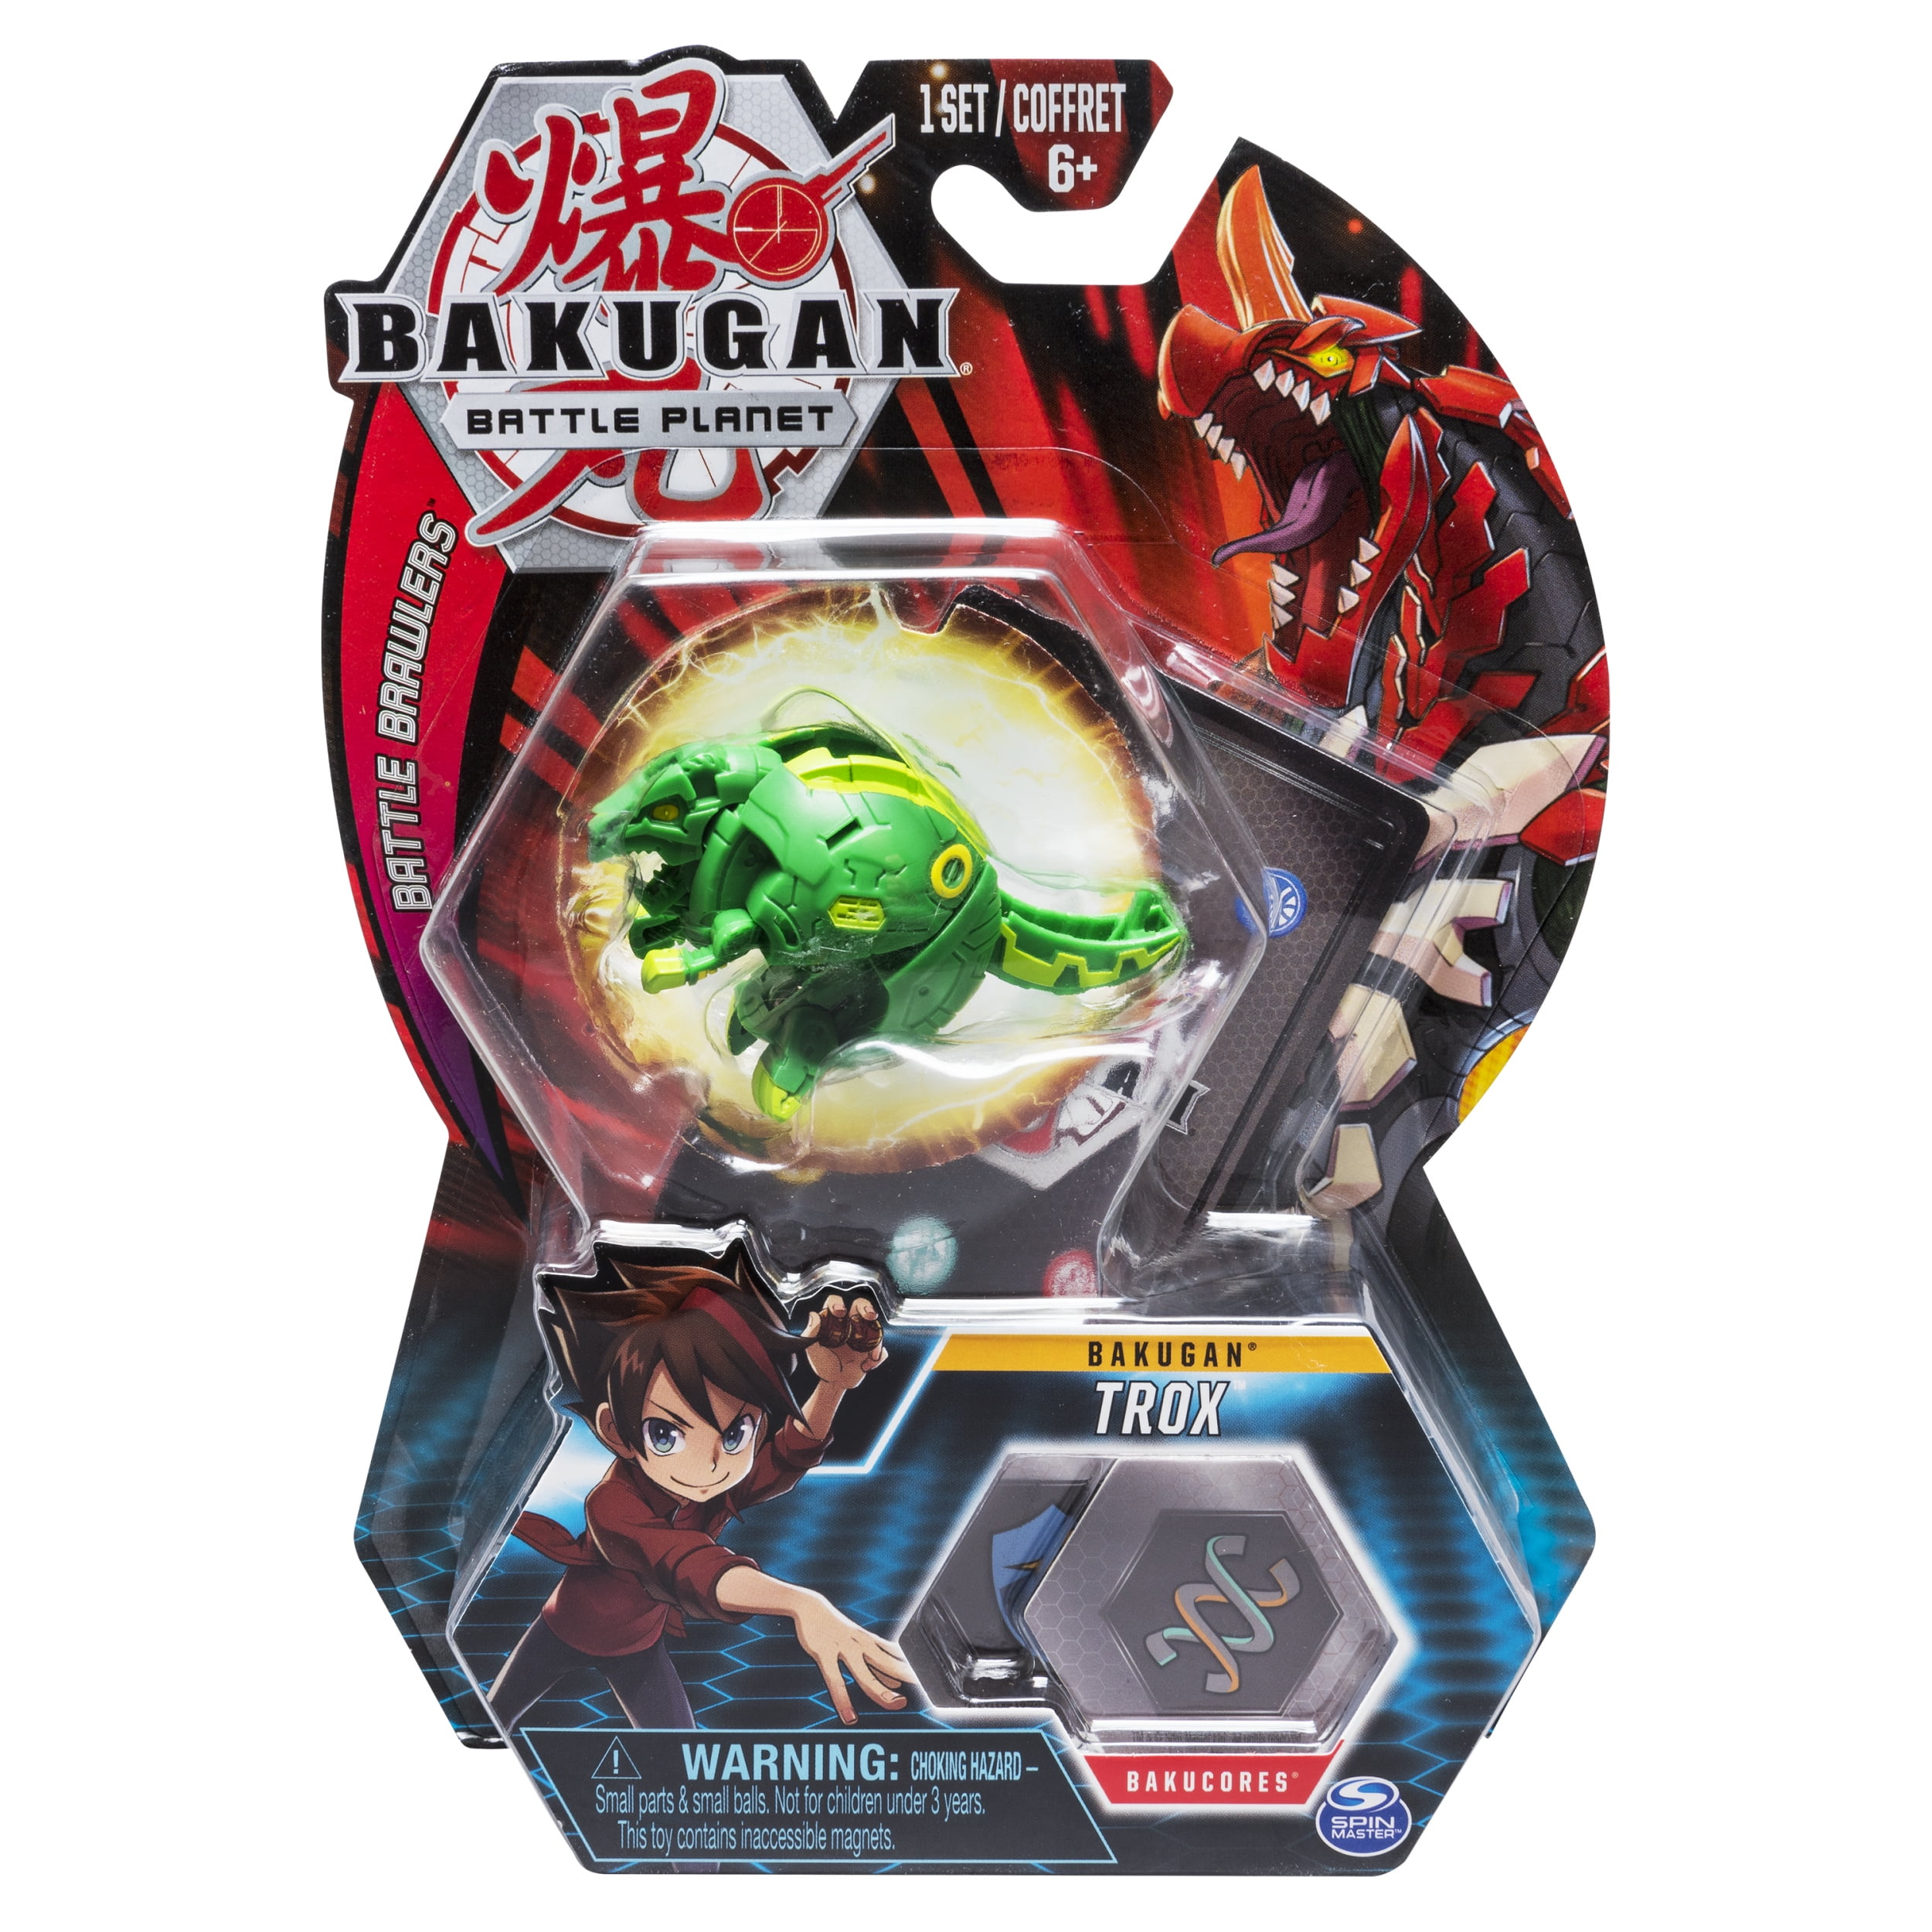 Bakugan Battle Planet Official Episode 1 Quick Version 